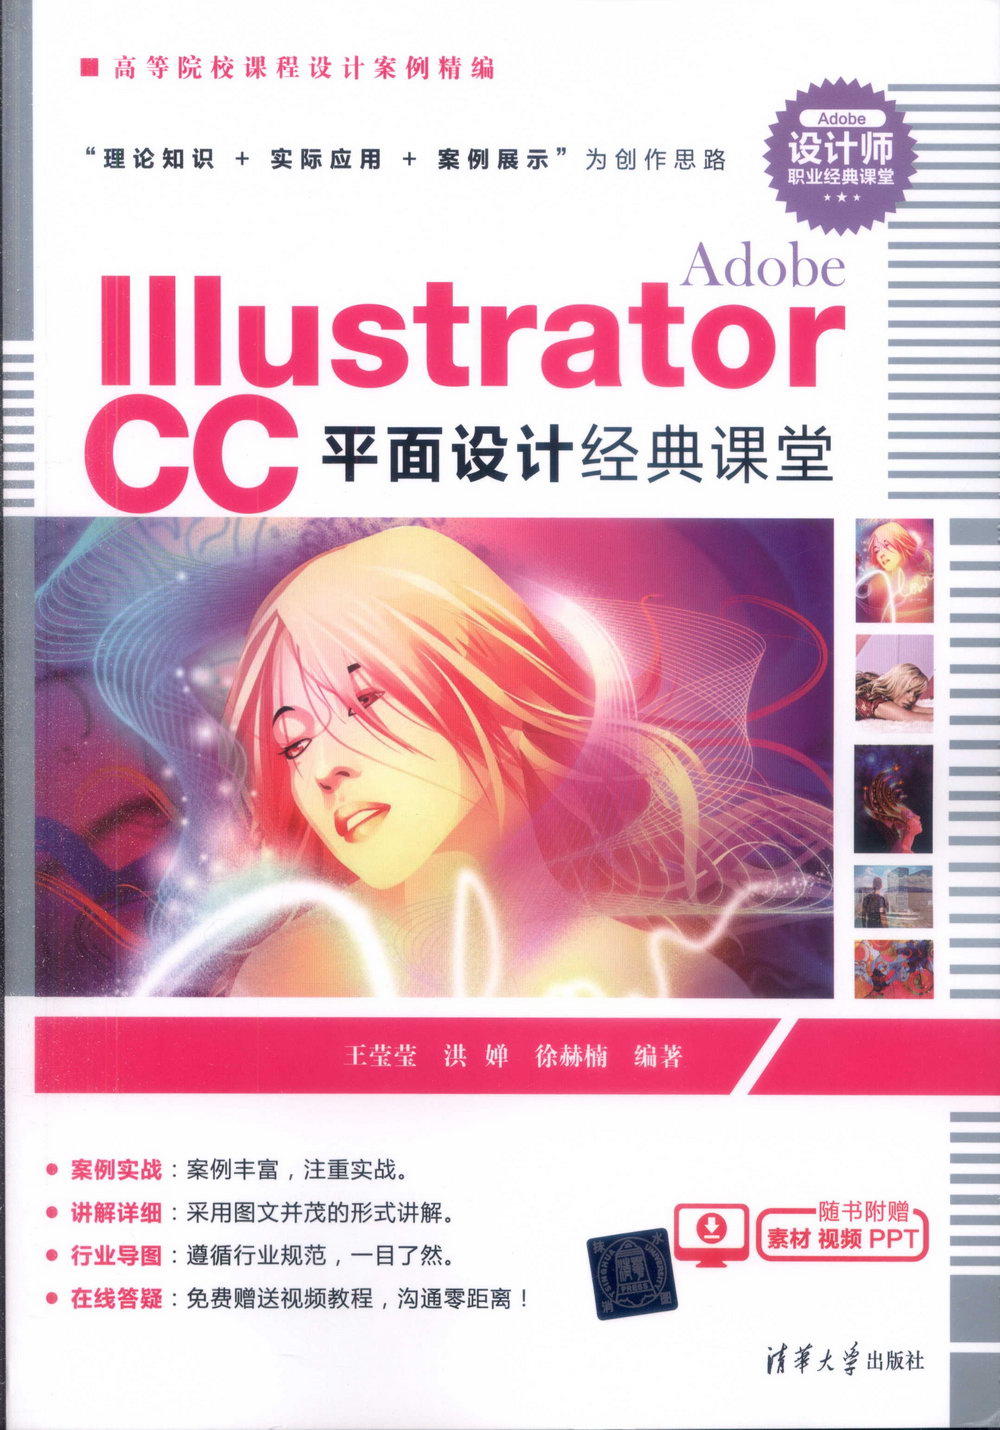 Adobe Illustrator CC平面設計經典課堂